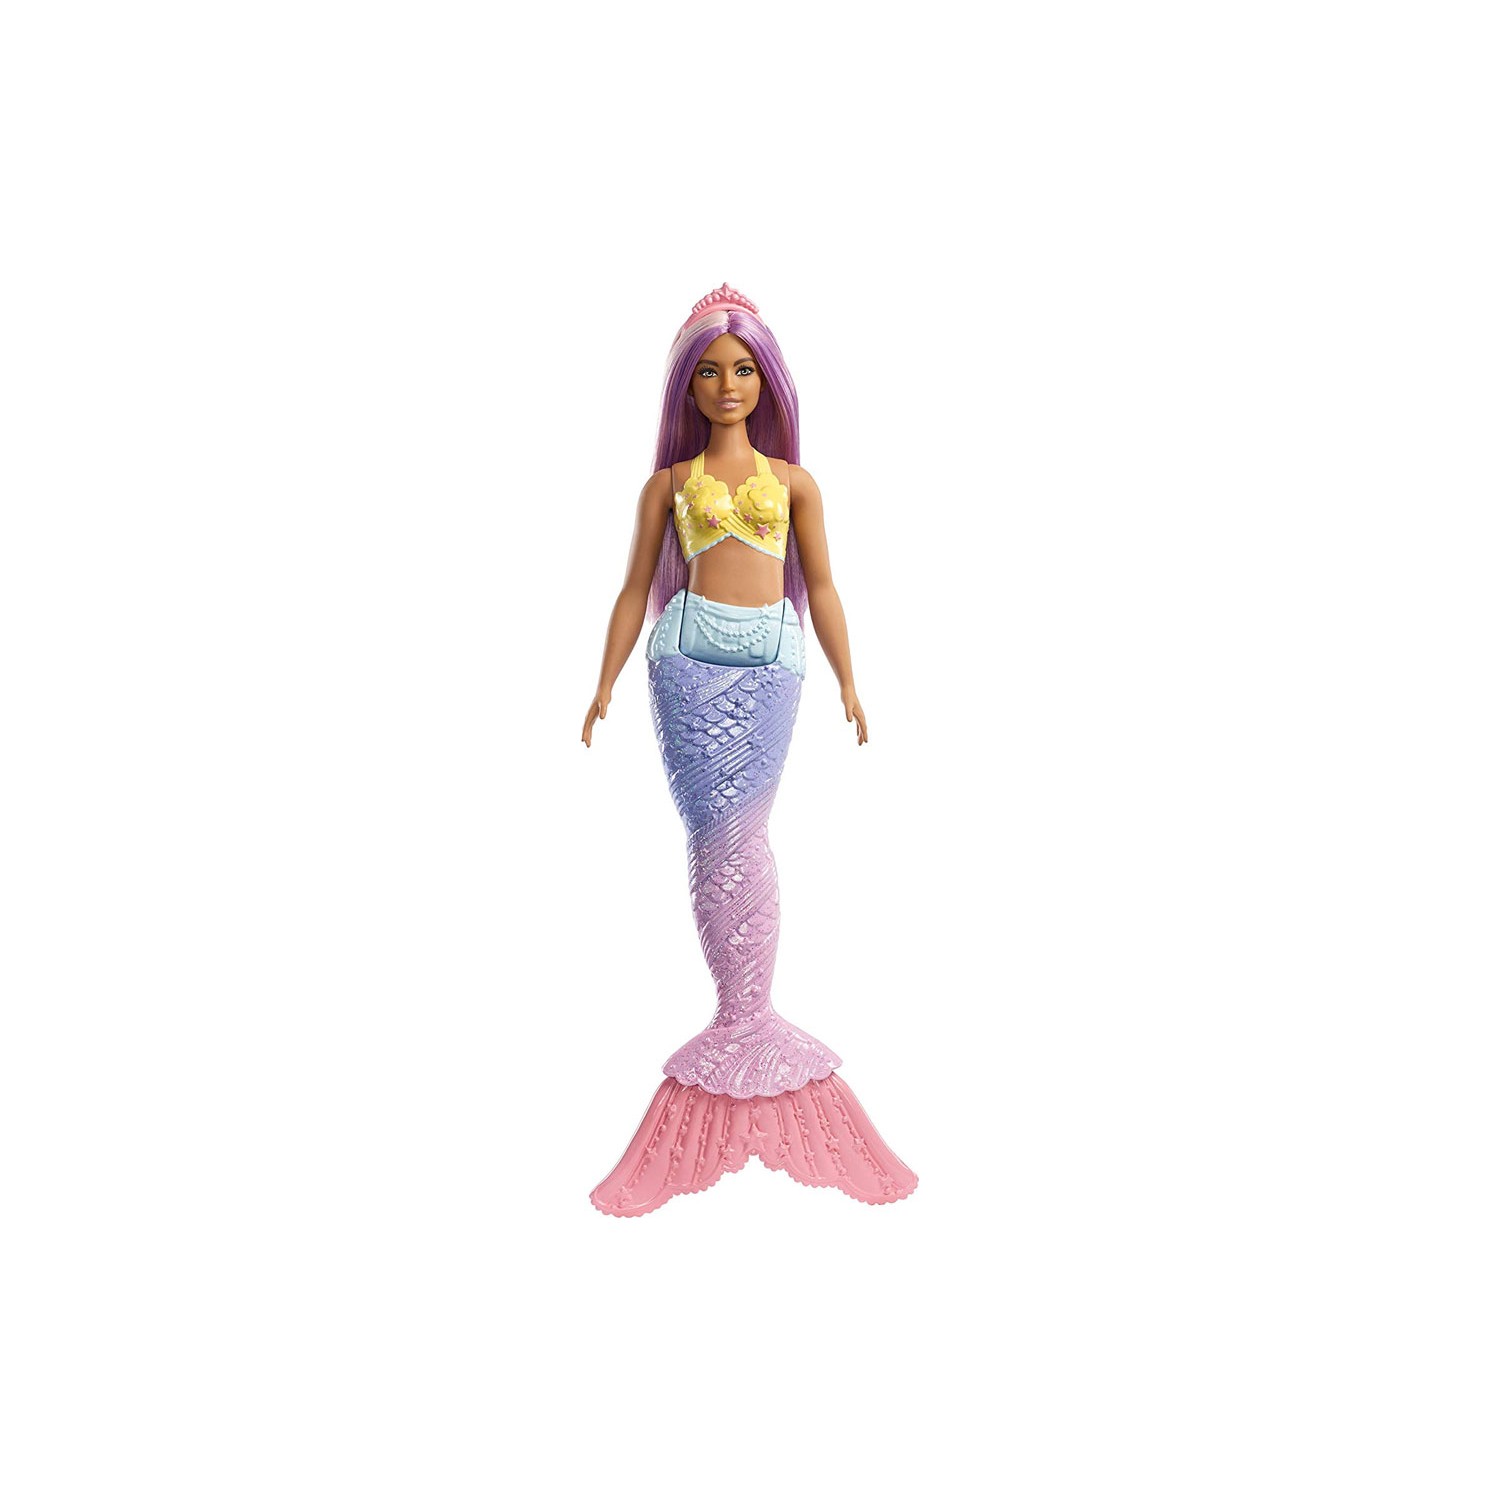 Куклы Barbie Dreamtopia Mermaid FXT08 куклы русалки barbie dreamtopia fxt08